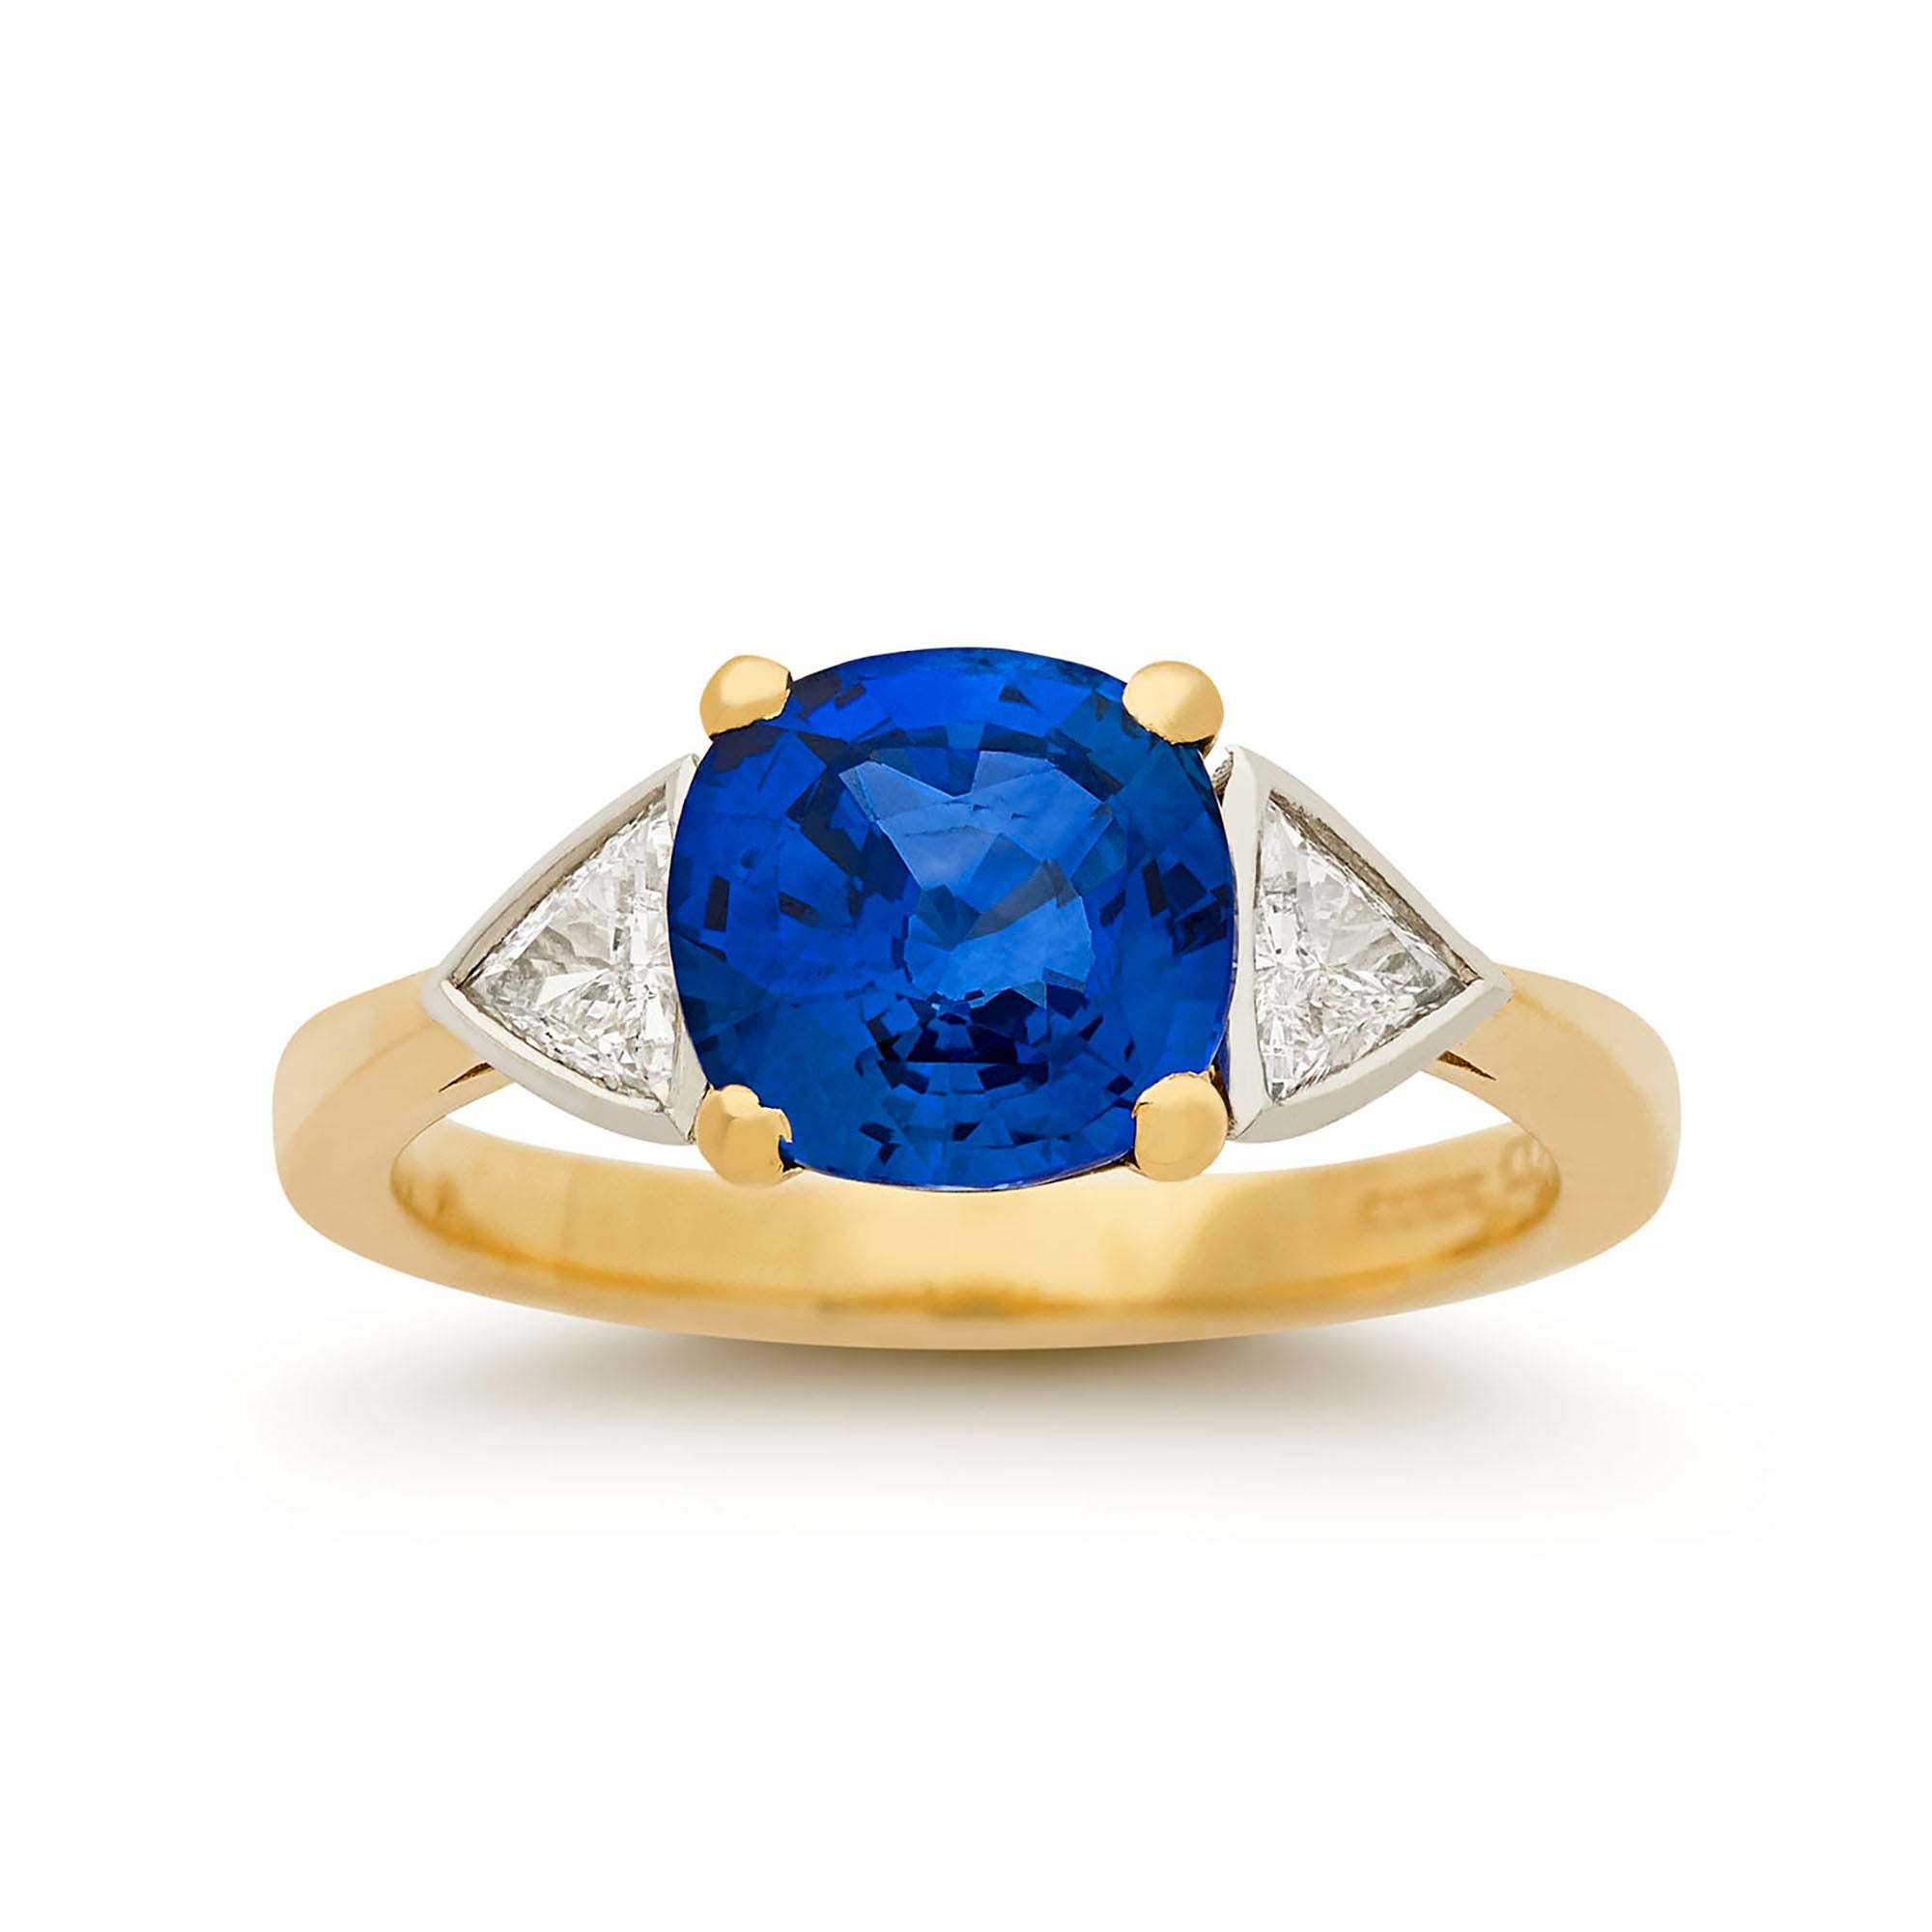 Ceylon sapphire and triangular diamond three stone ring